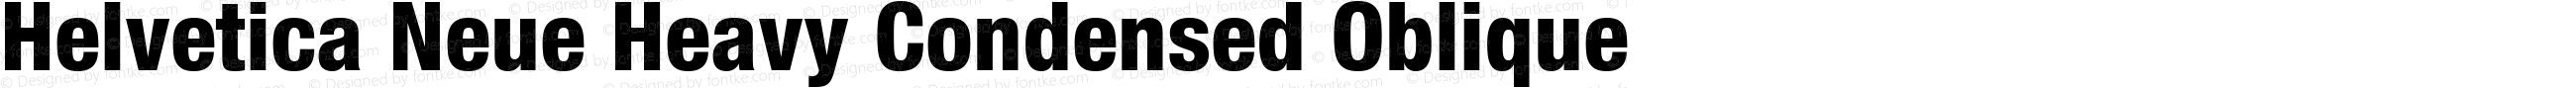 Helvetica 87 Heavy Condensed Oblique